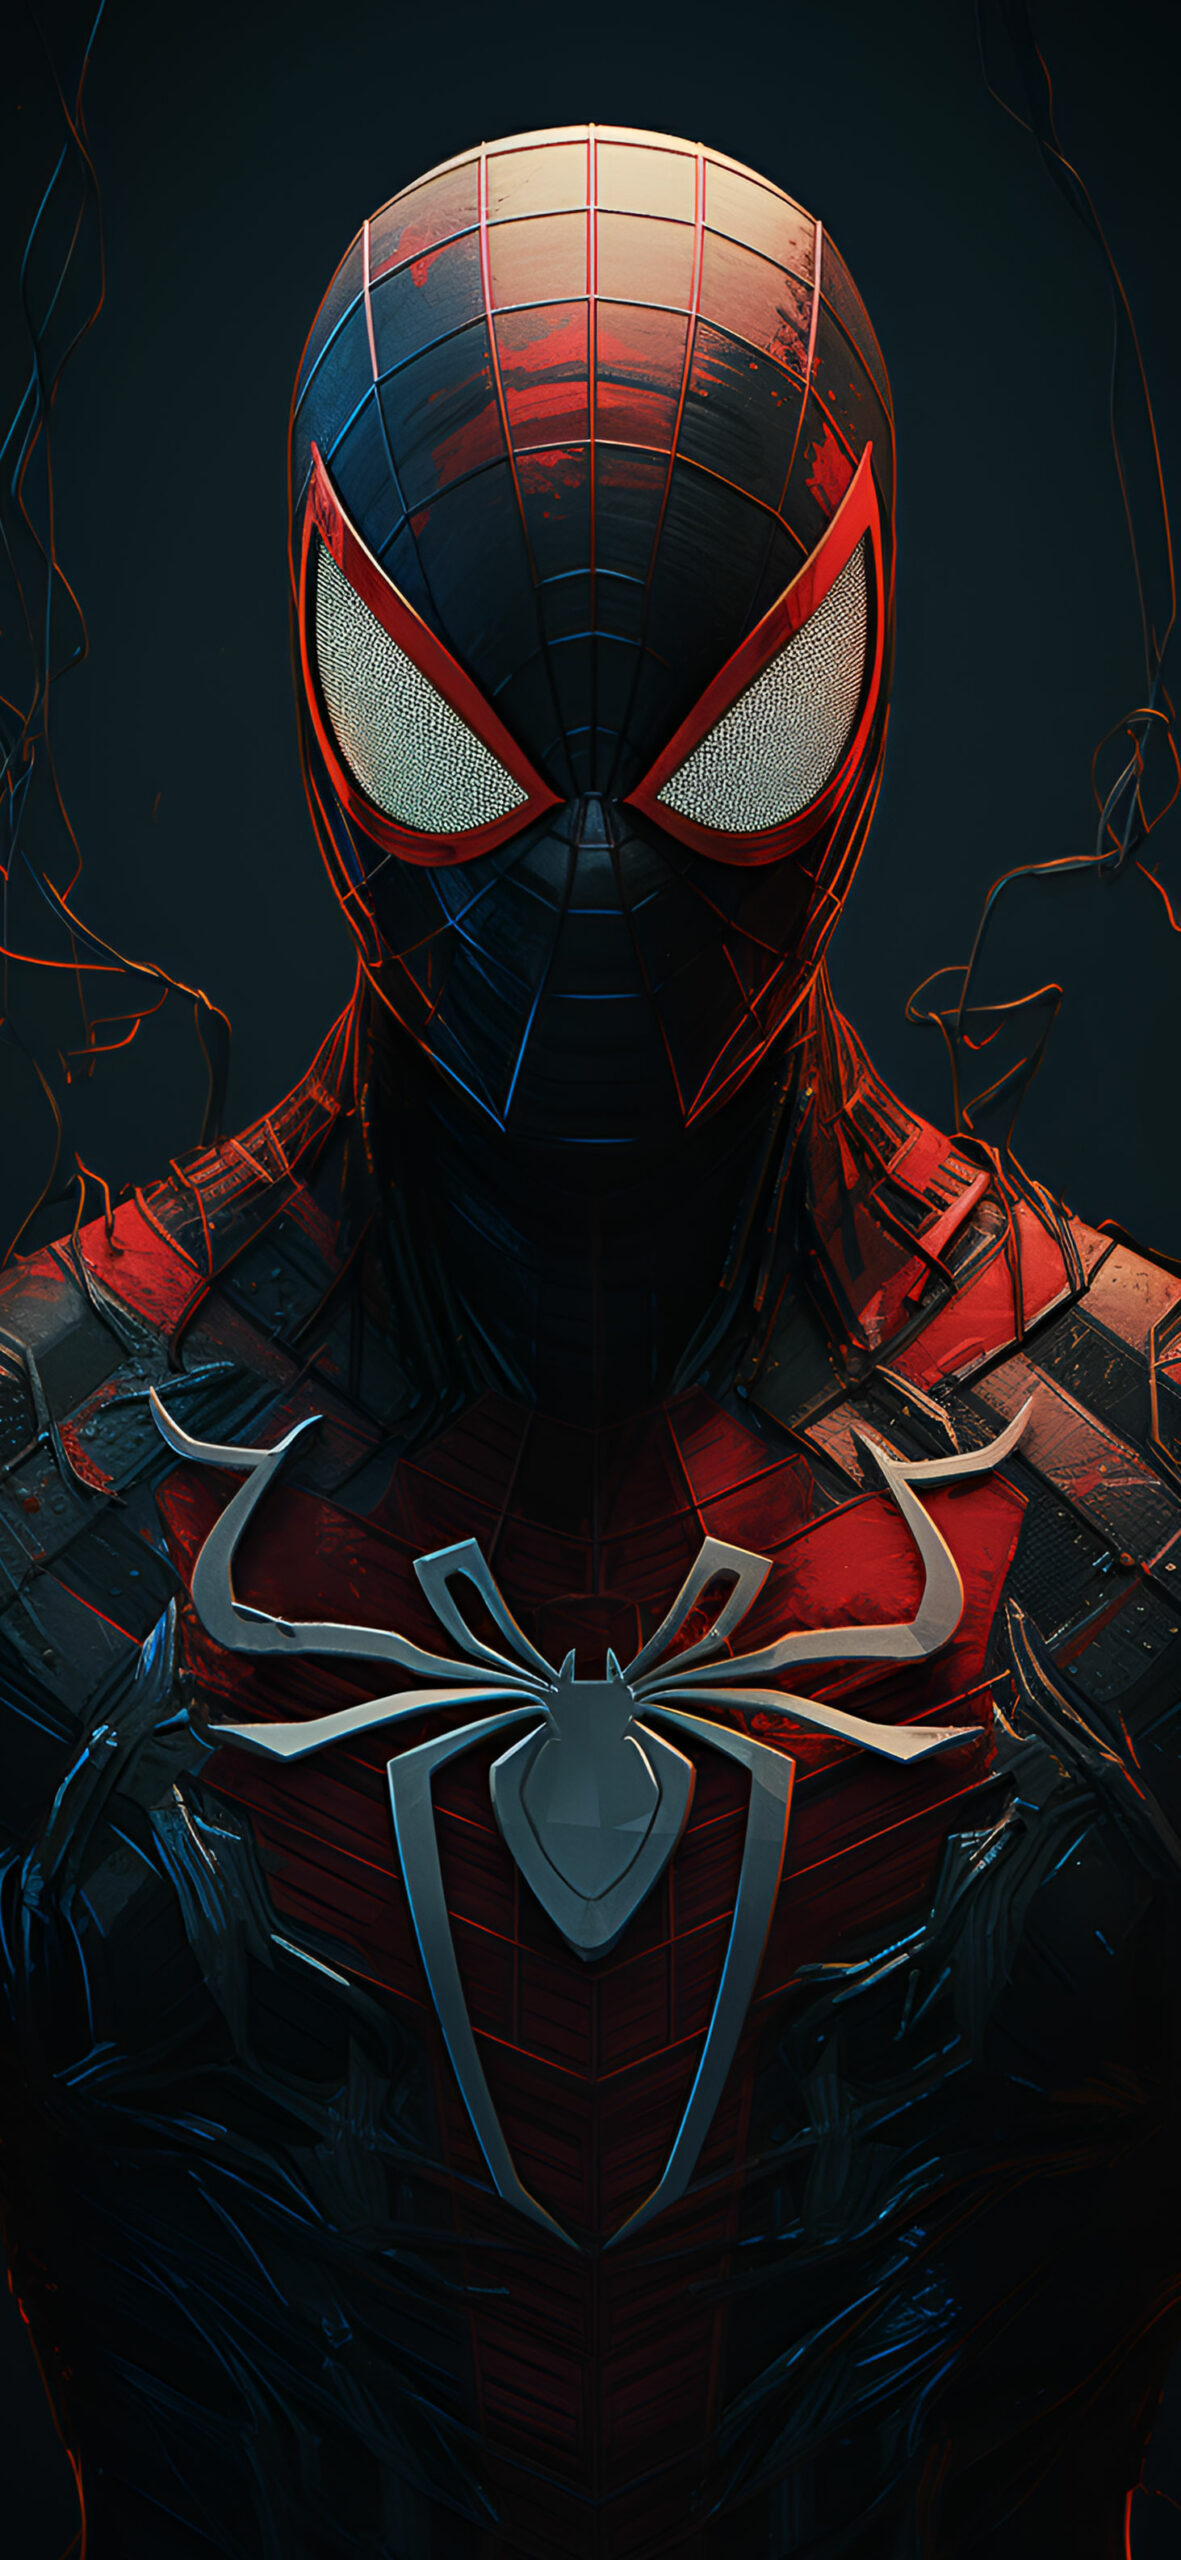 Marvel spider man sharp wallpaper Superhero aesthetic wallpape